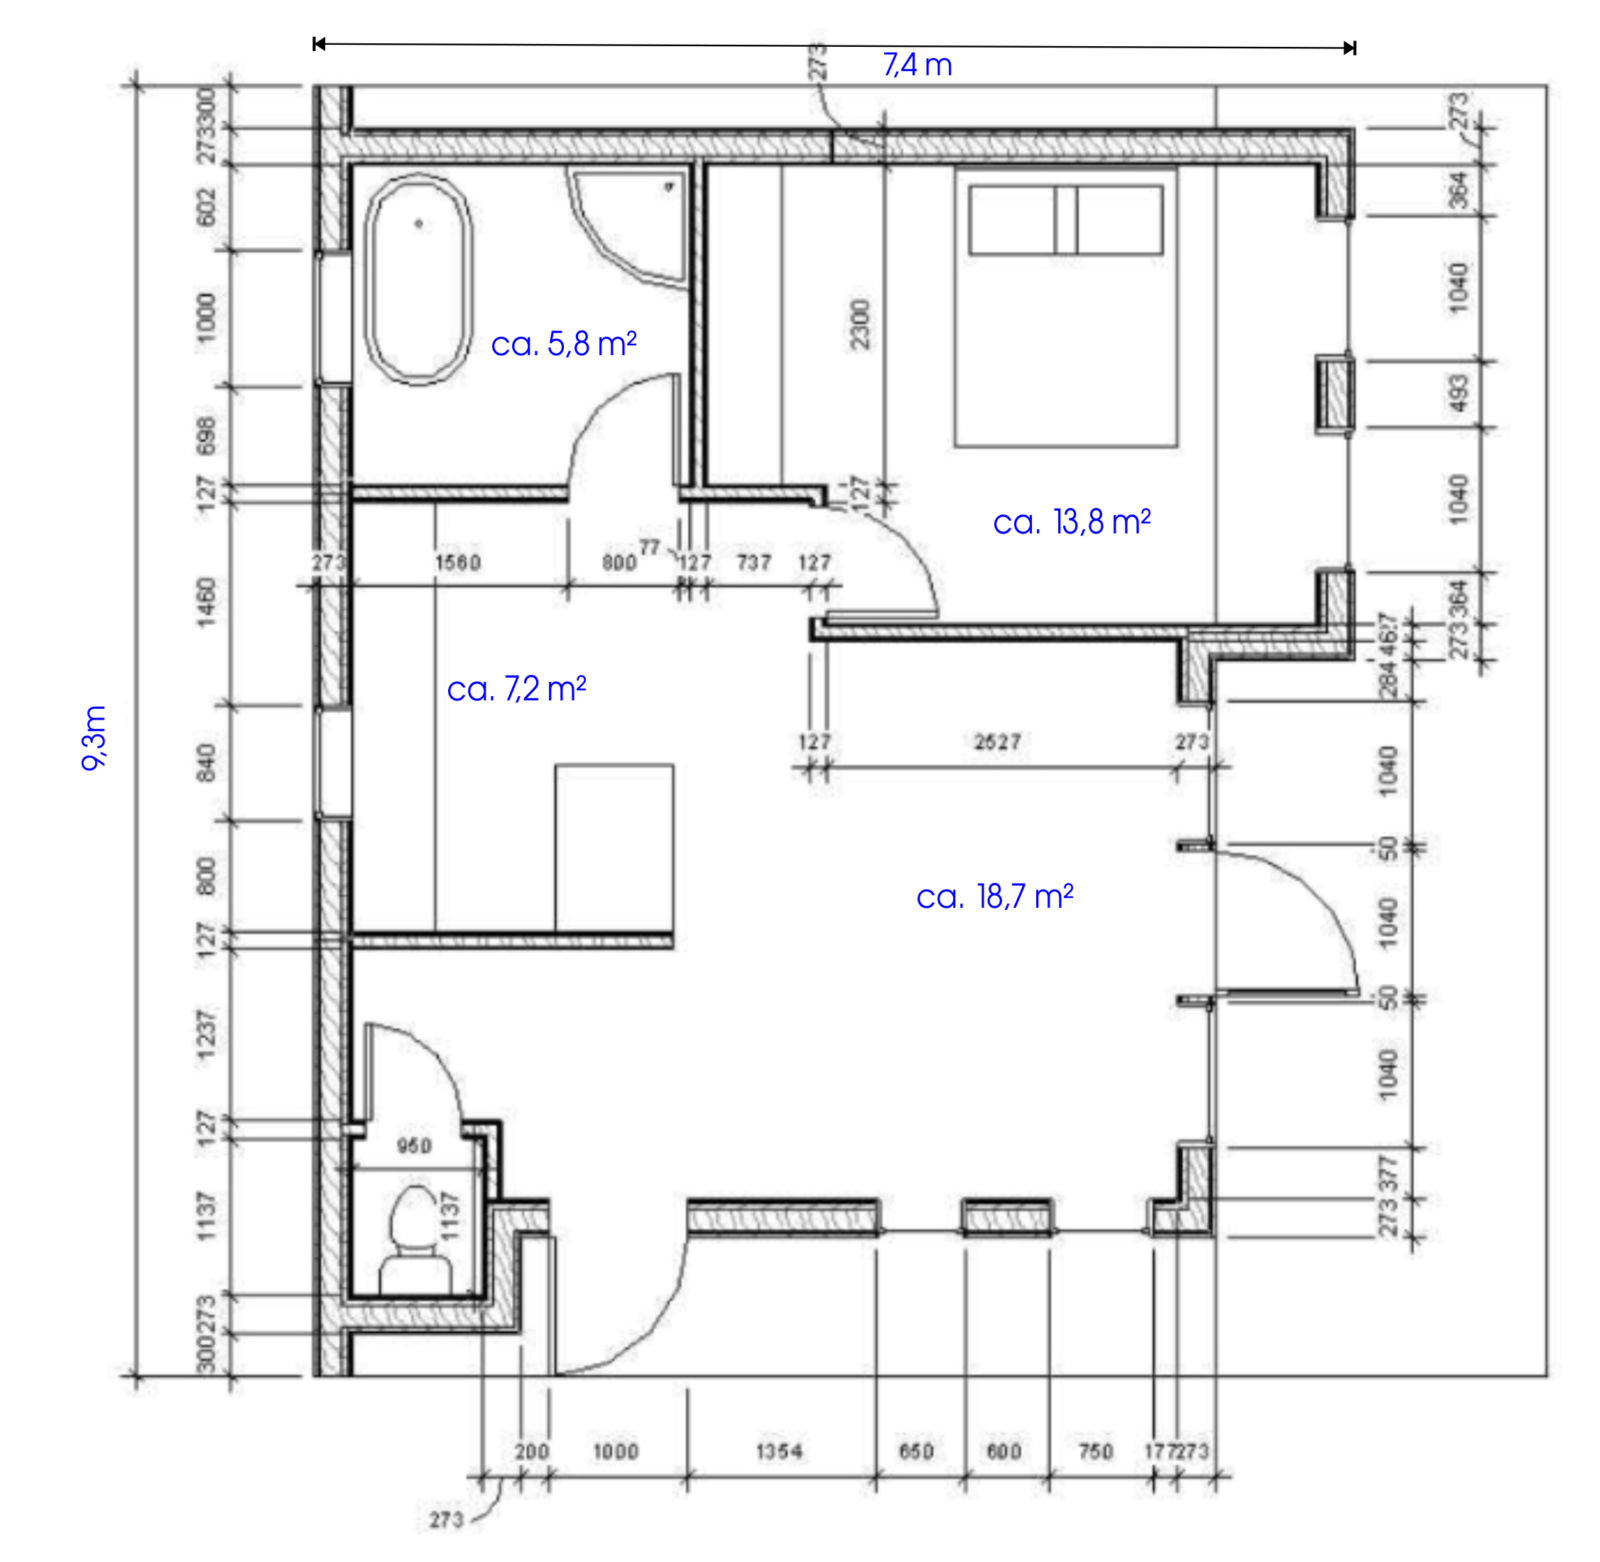 plattegrond van zelfbouwkit bouwpakket prefab houtskeletbouw woning 60 m2